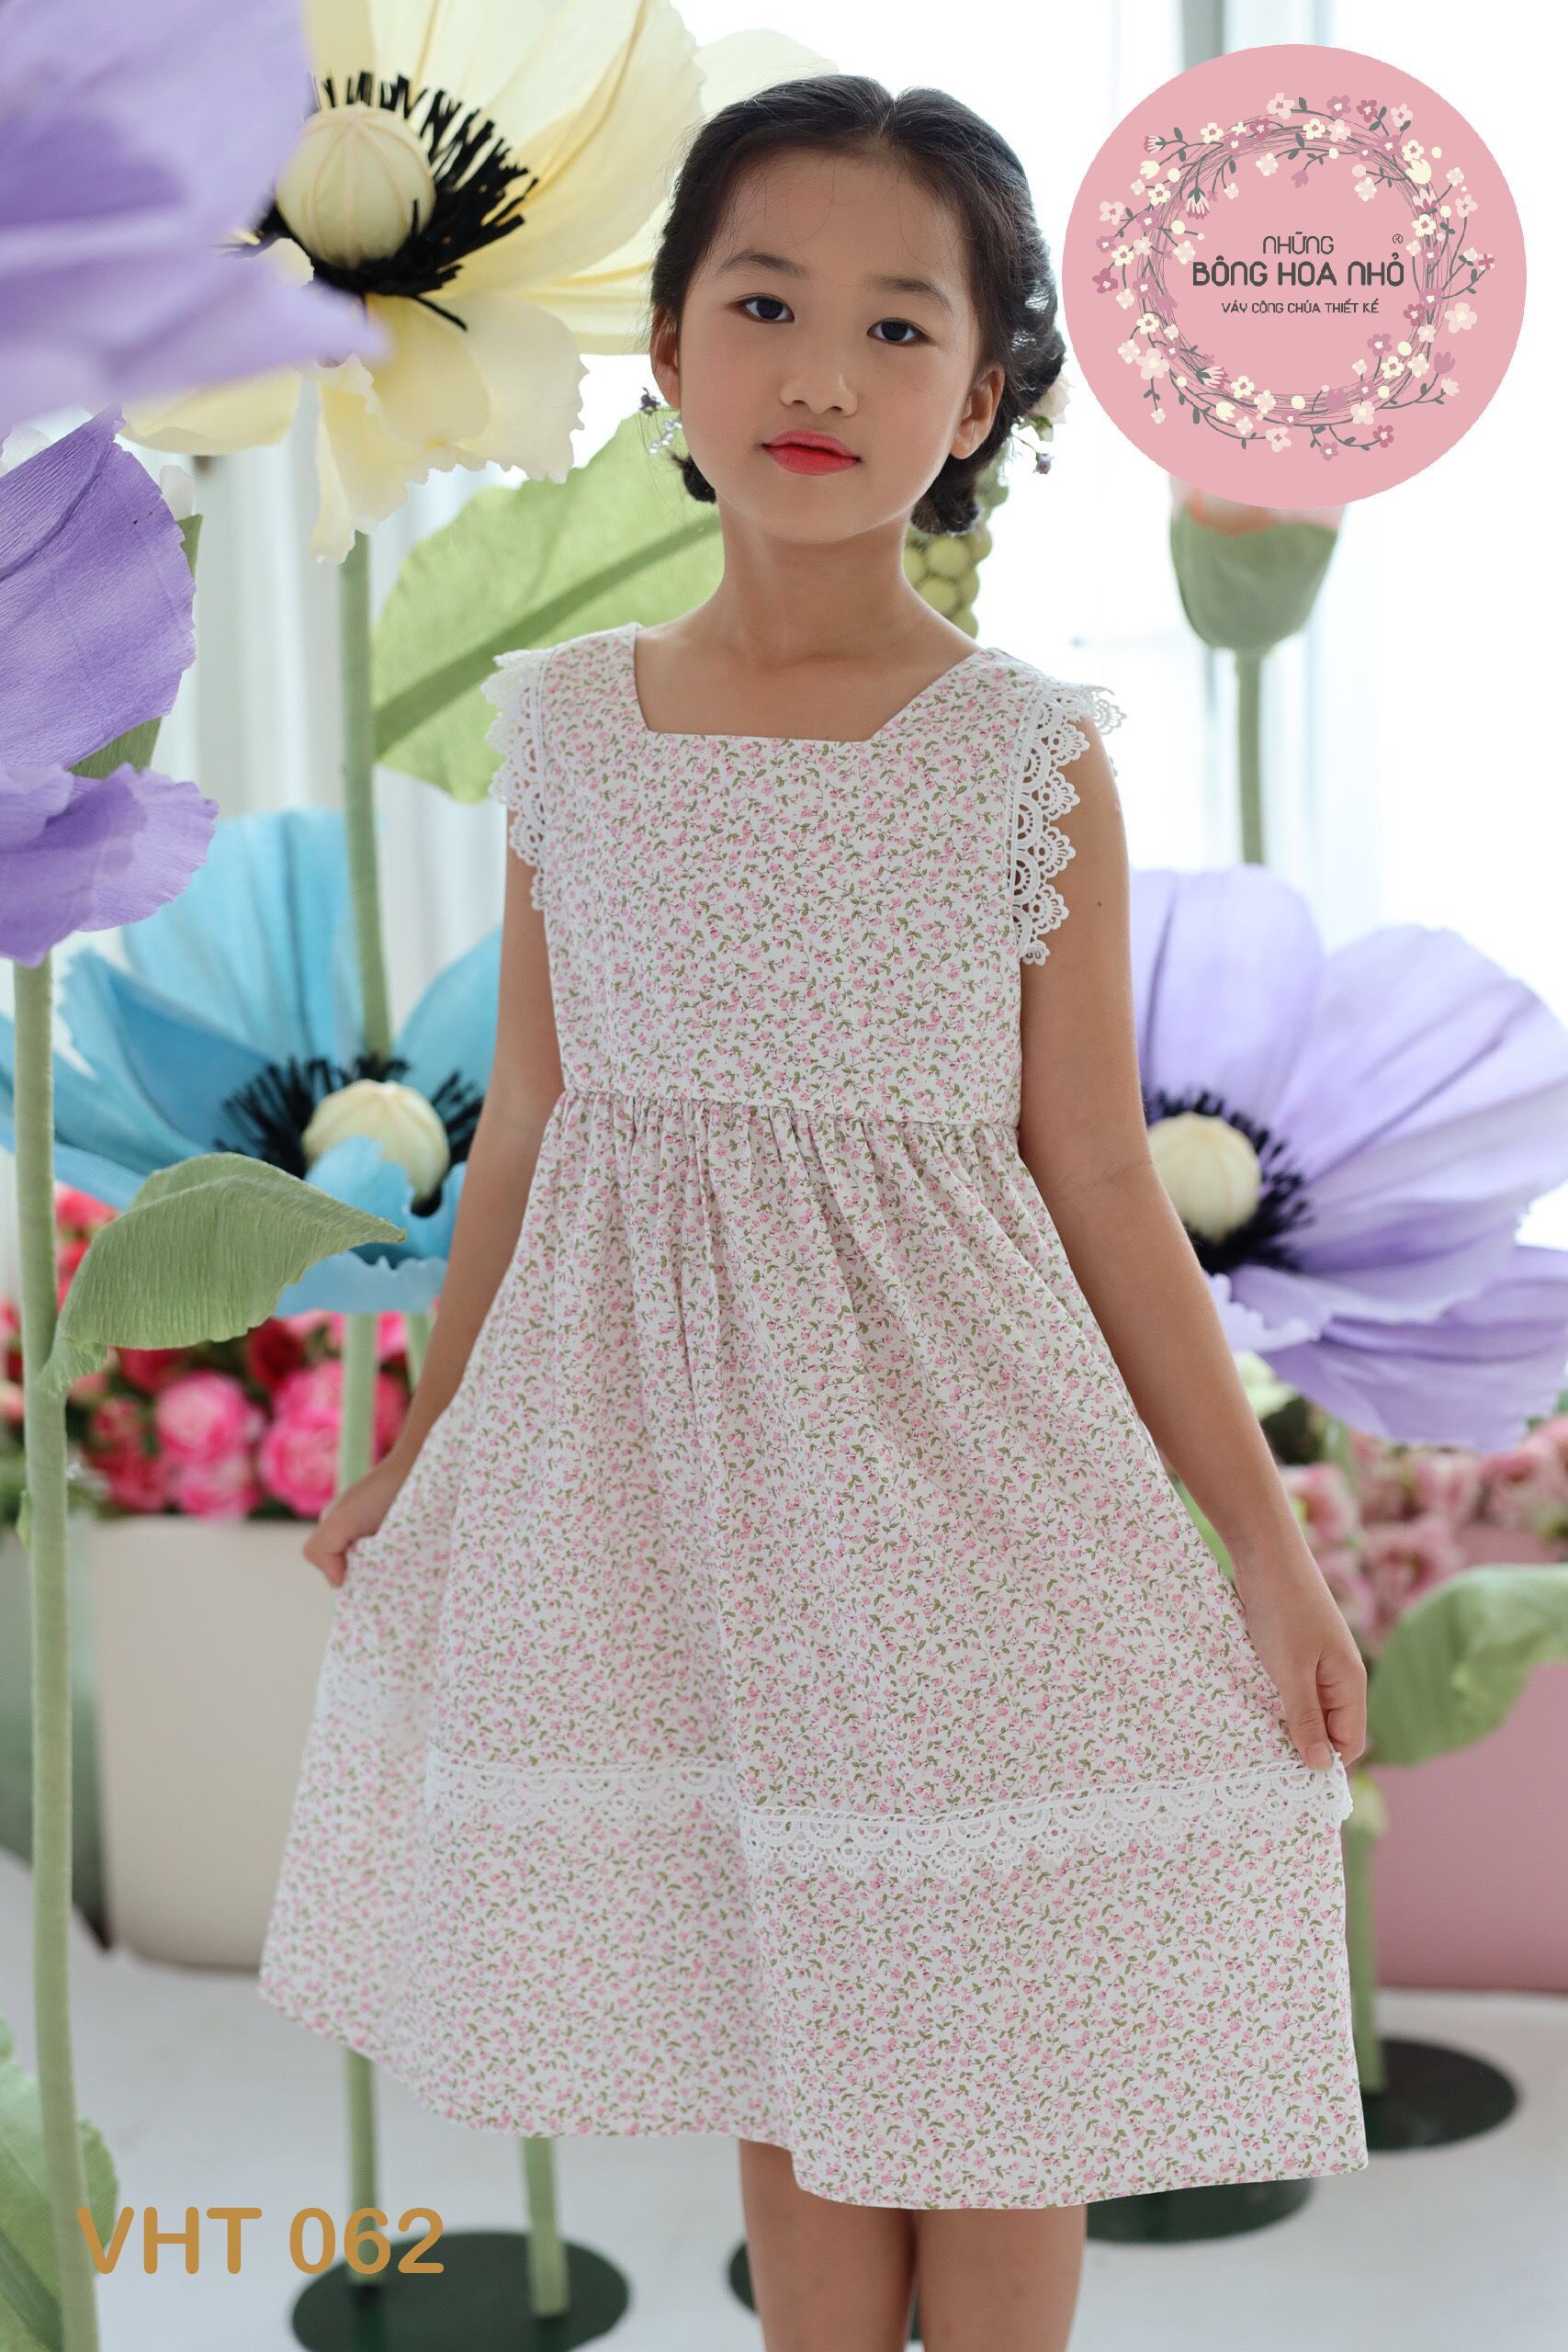 Tuyển chọn 999 mẫu váy hoa nhí vải thô được yêu thích nhất!